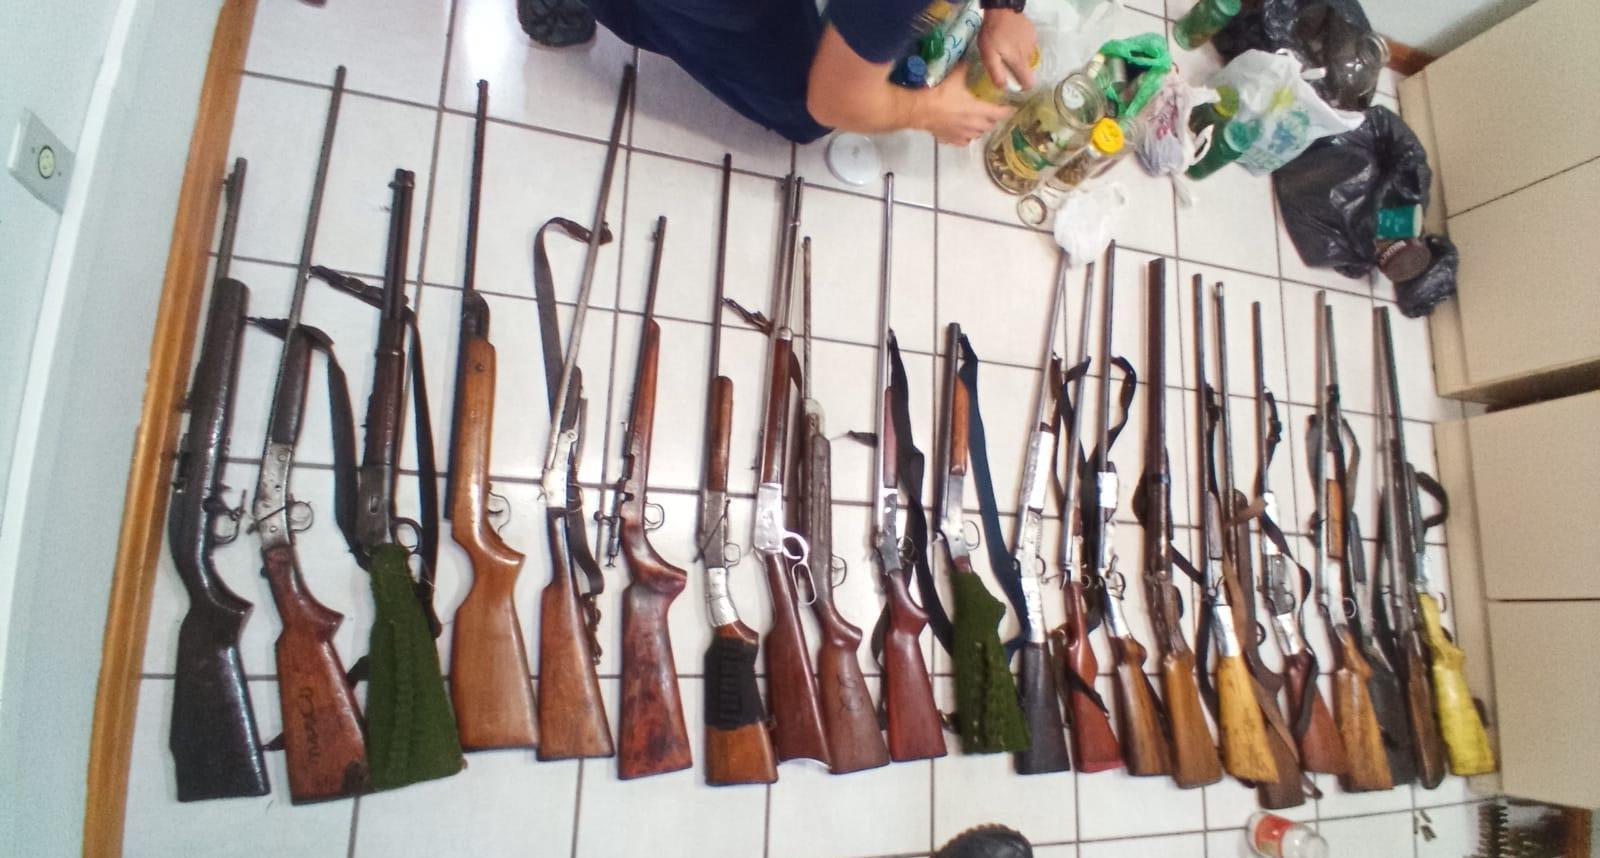 Arsenal de armas e munições é aprendido em Vidal Ramos pela Polícia Civil